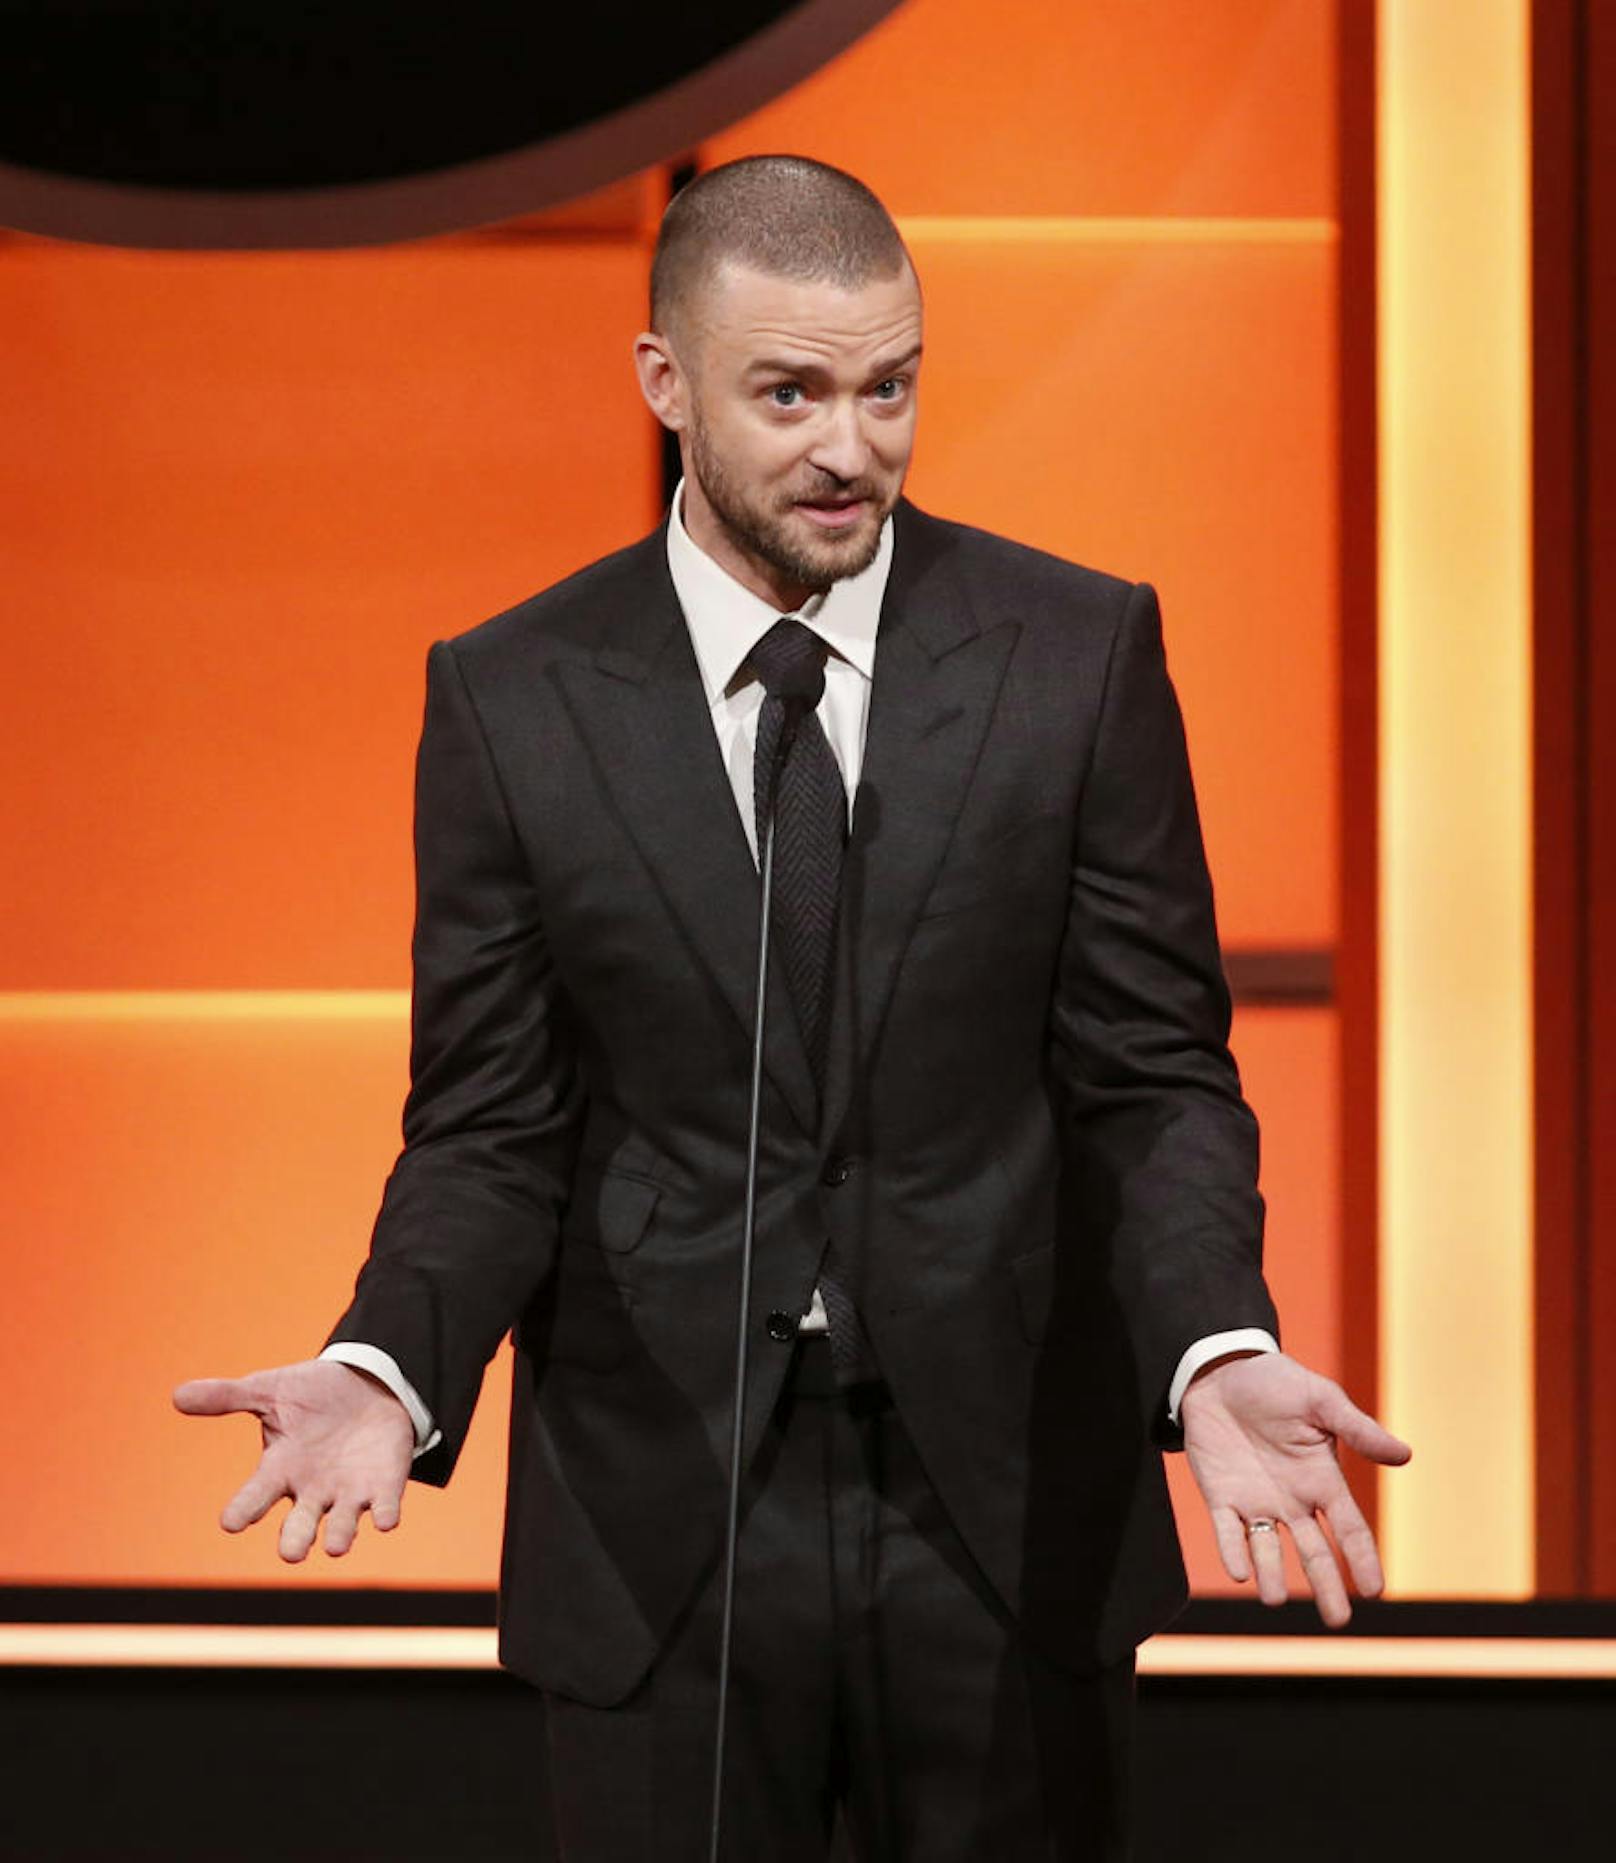 Immer gut für einen Scherz: Justin Timberlake